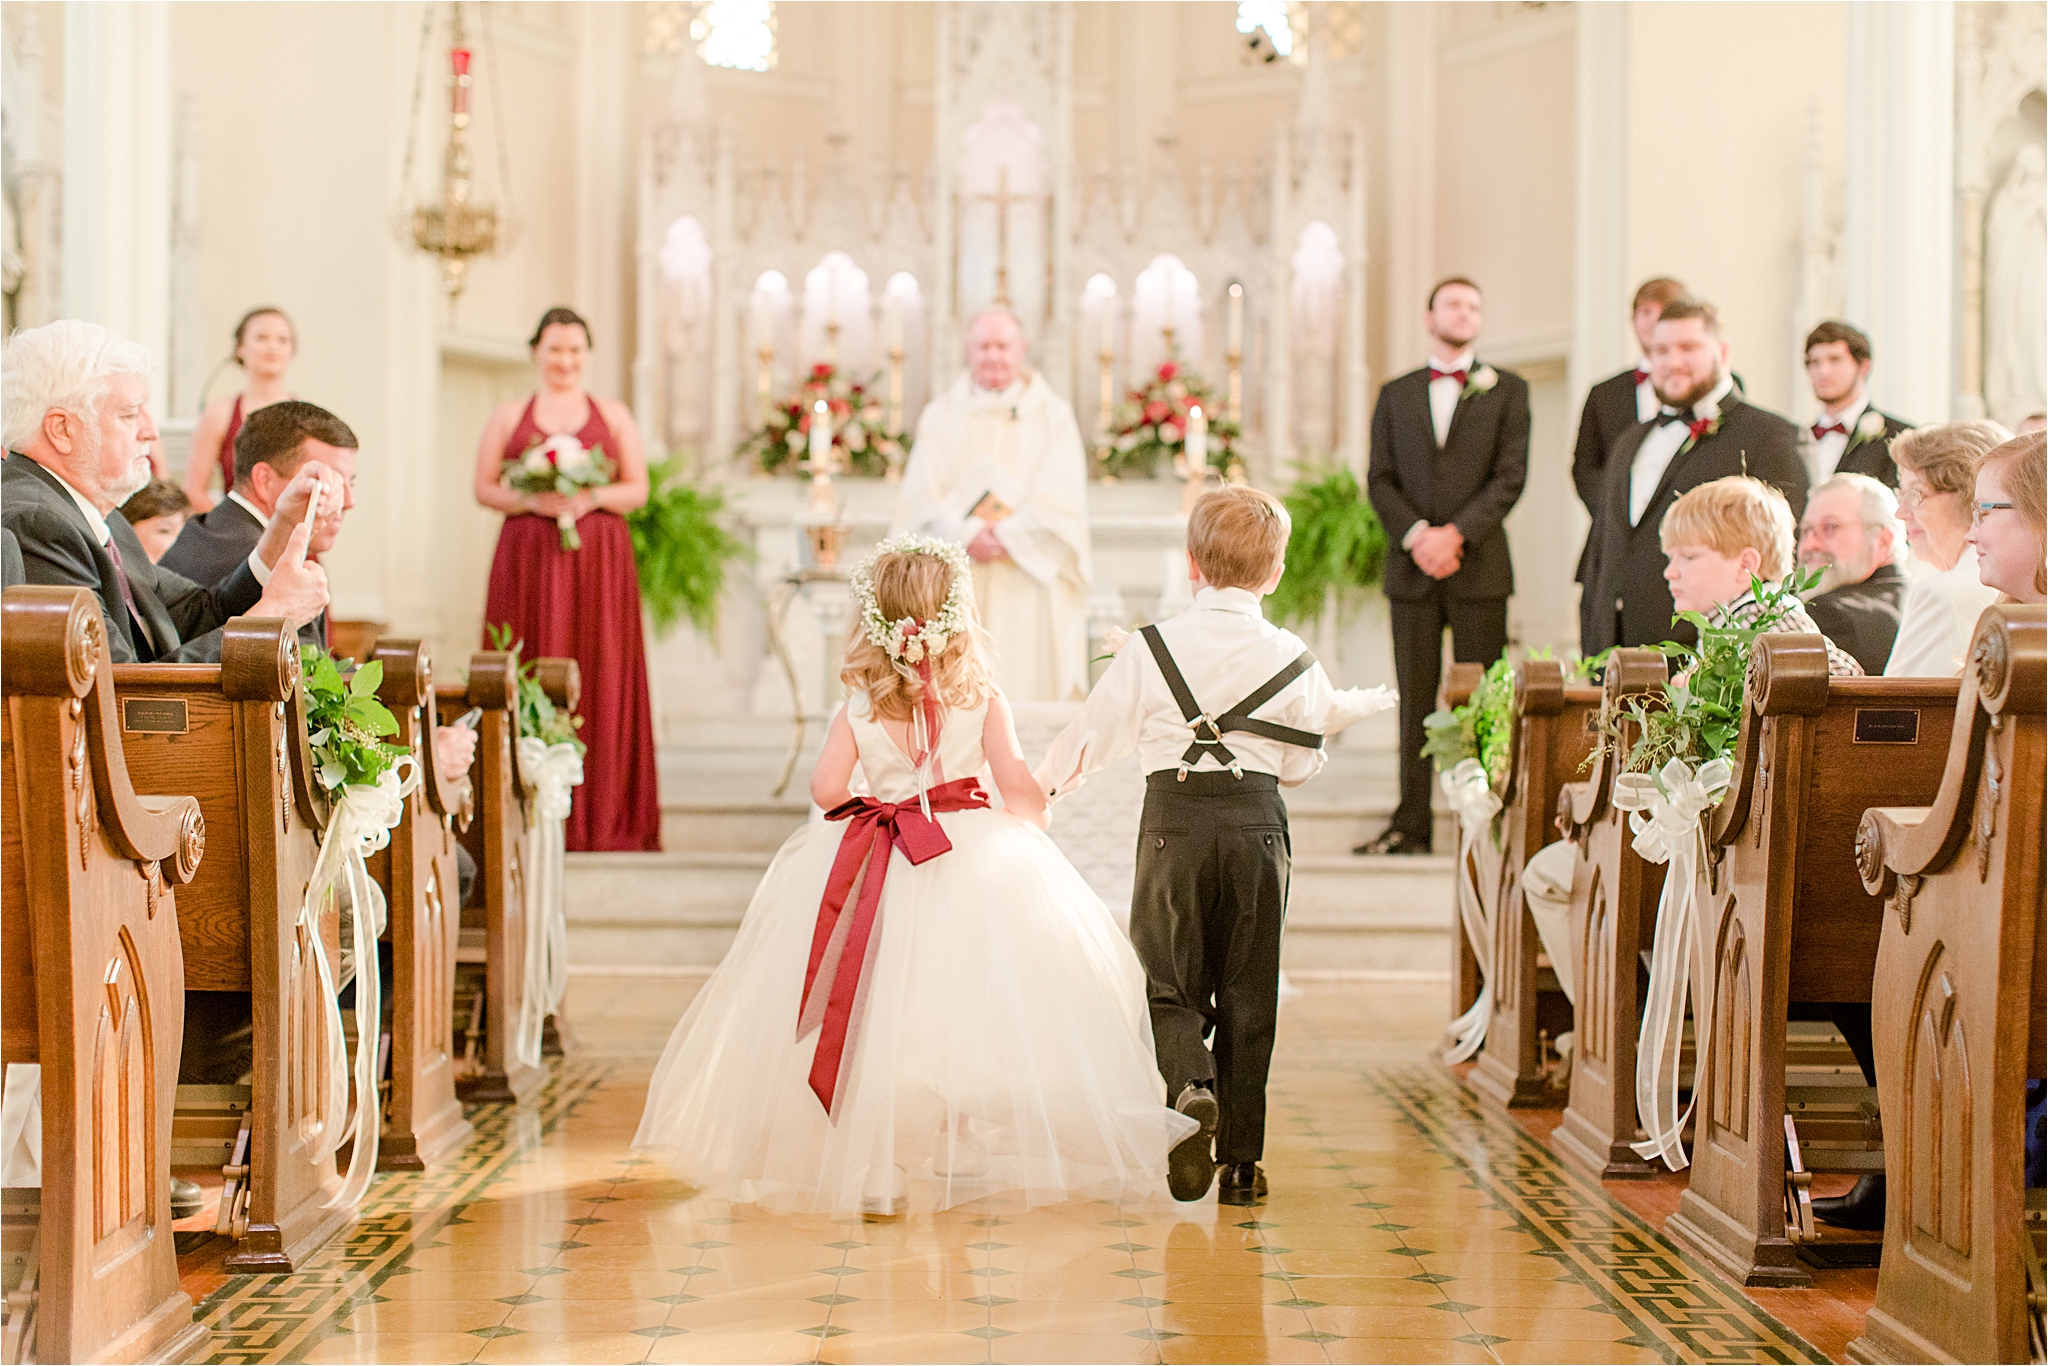 flower-girl-ring-bearer-holding-hands-walking-down-aisle-cranberry-wedding-colors-full-skirt